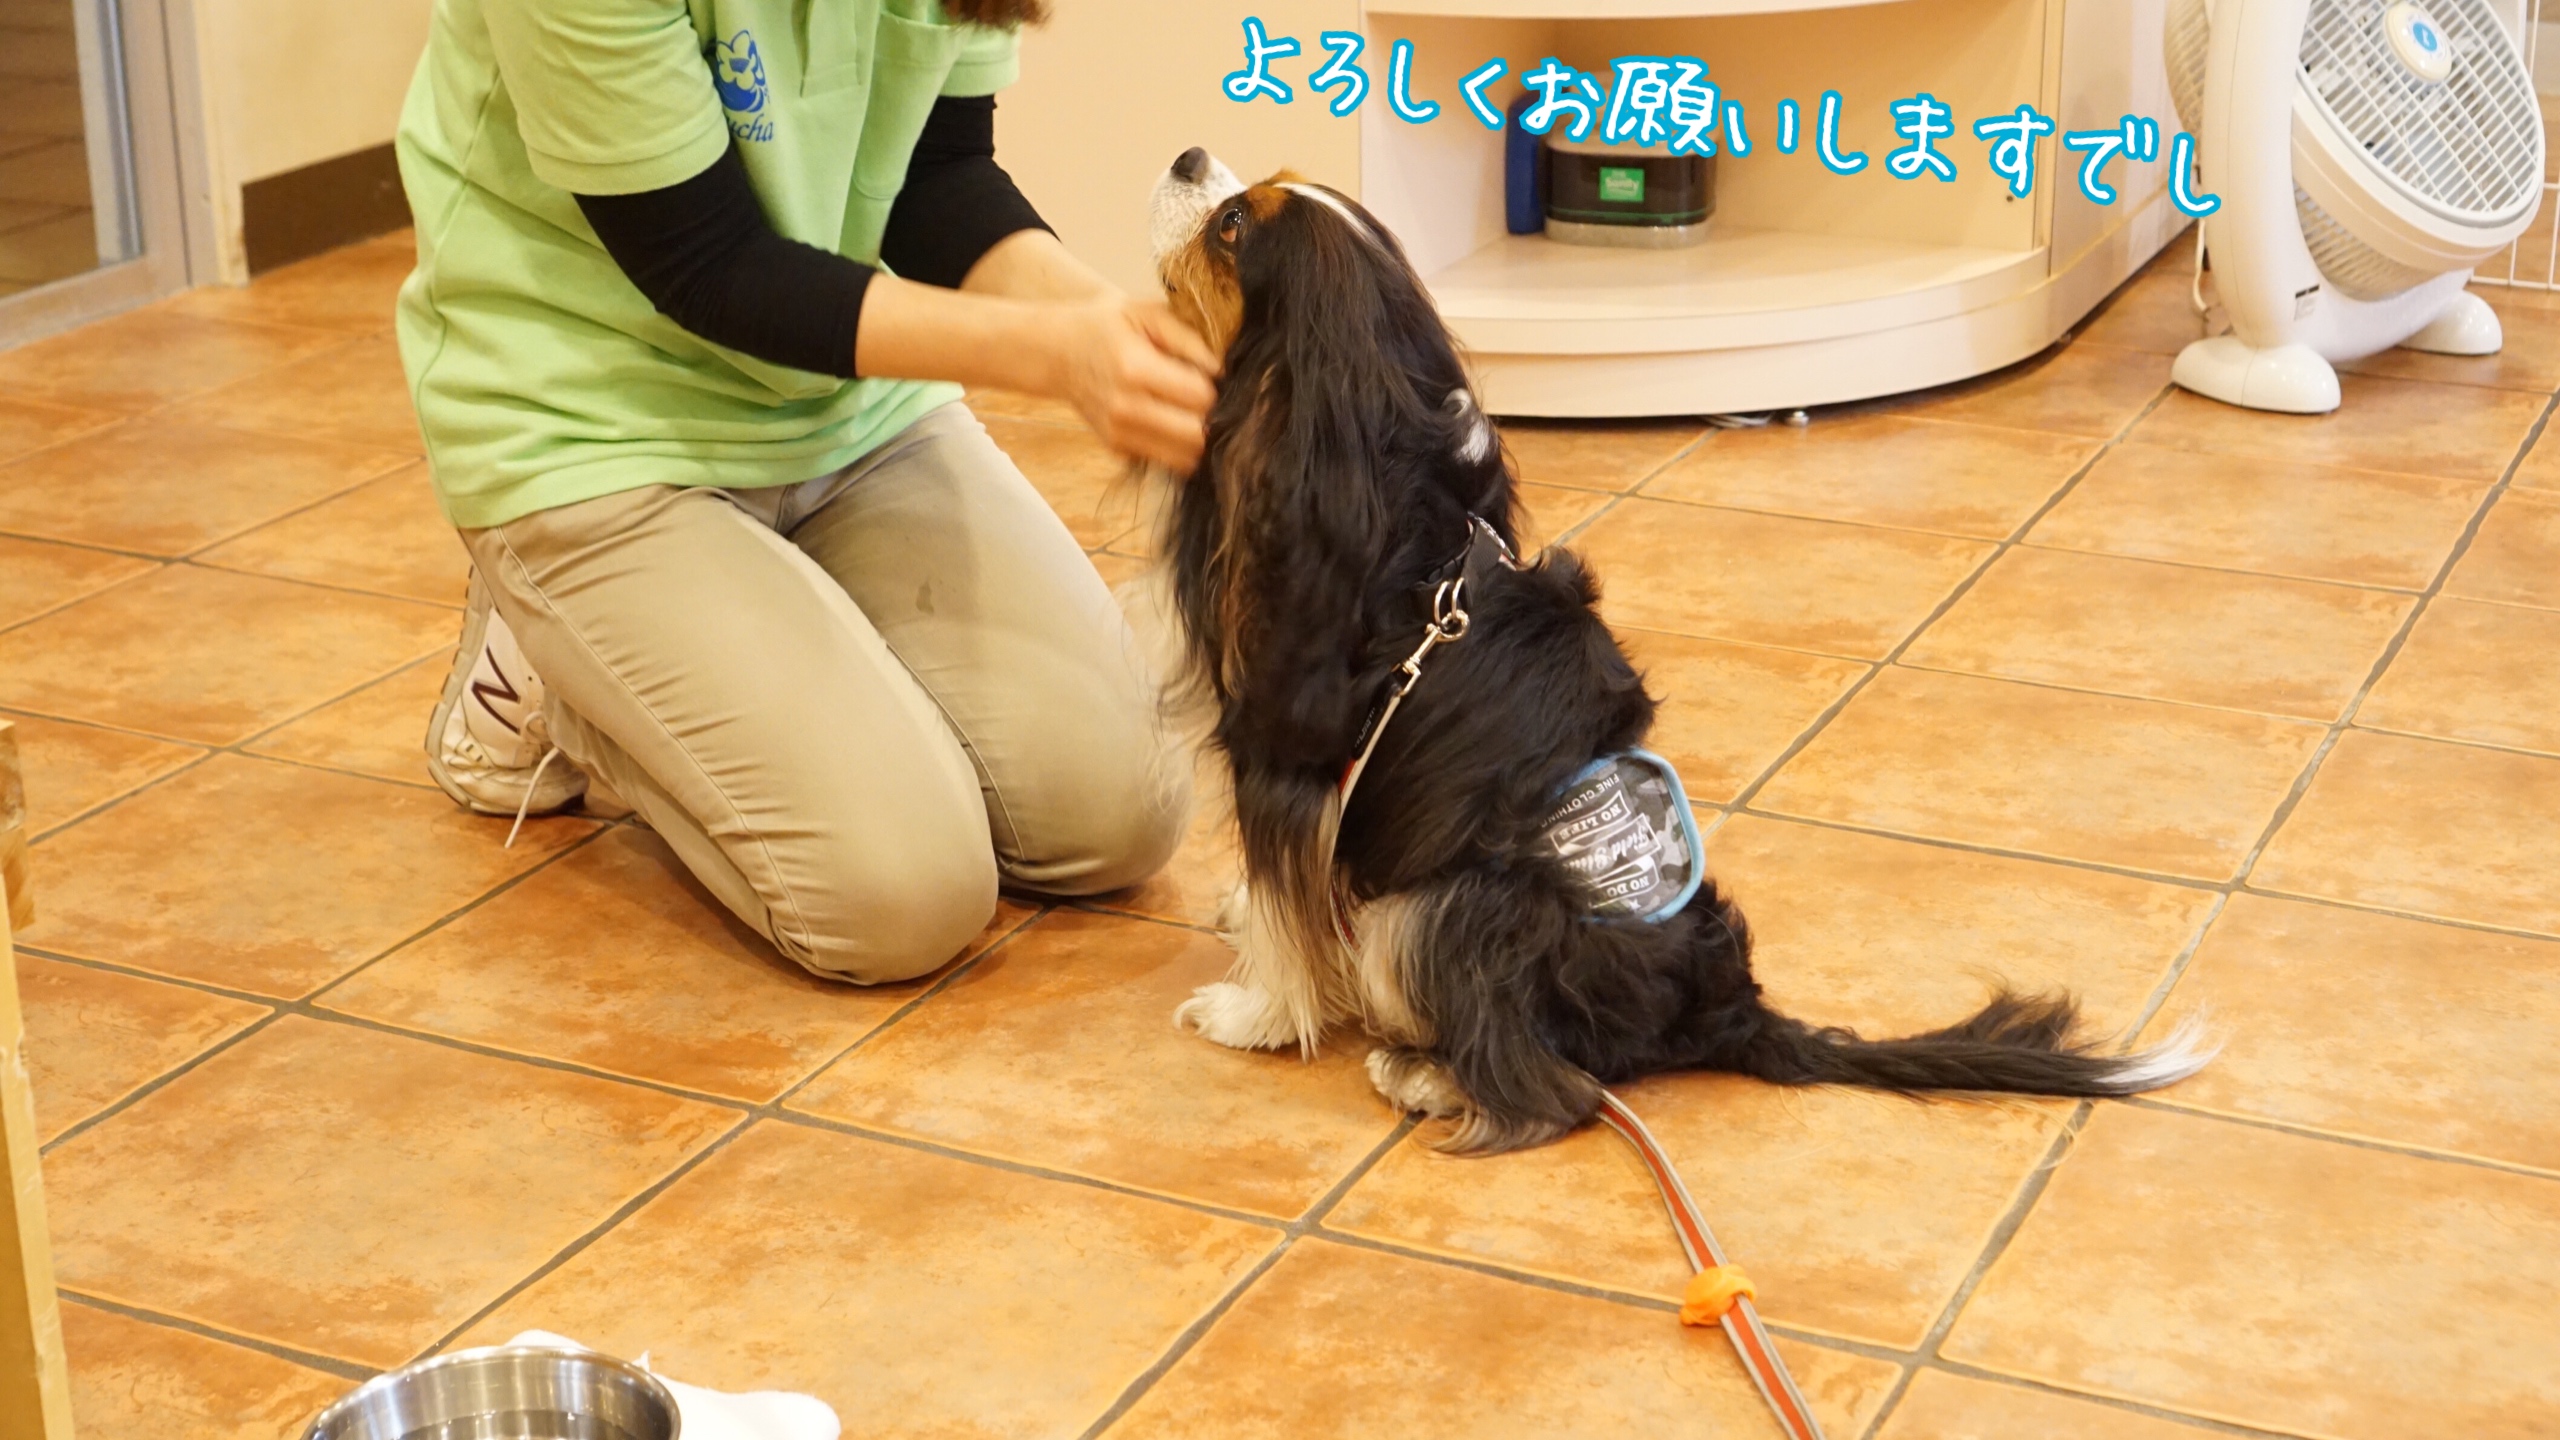 沖縄旅行⑤：カヌチャベイホテルで宿泊「愛犬と過ごす癒しの南国リゾートステイ」プラン